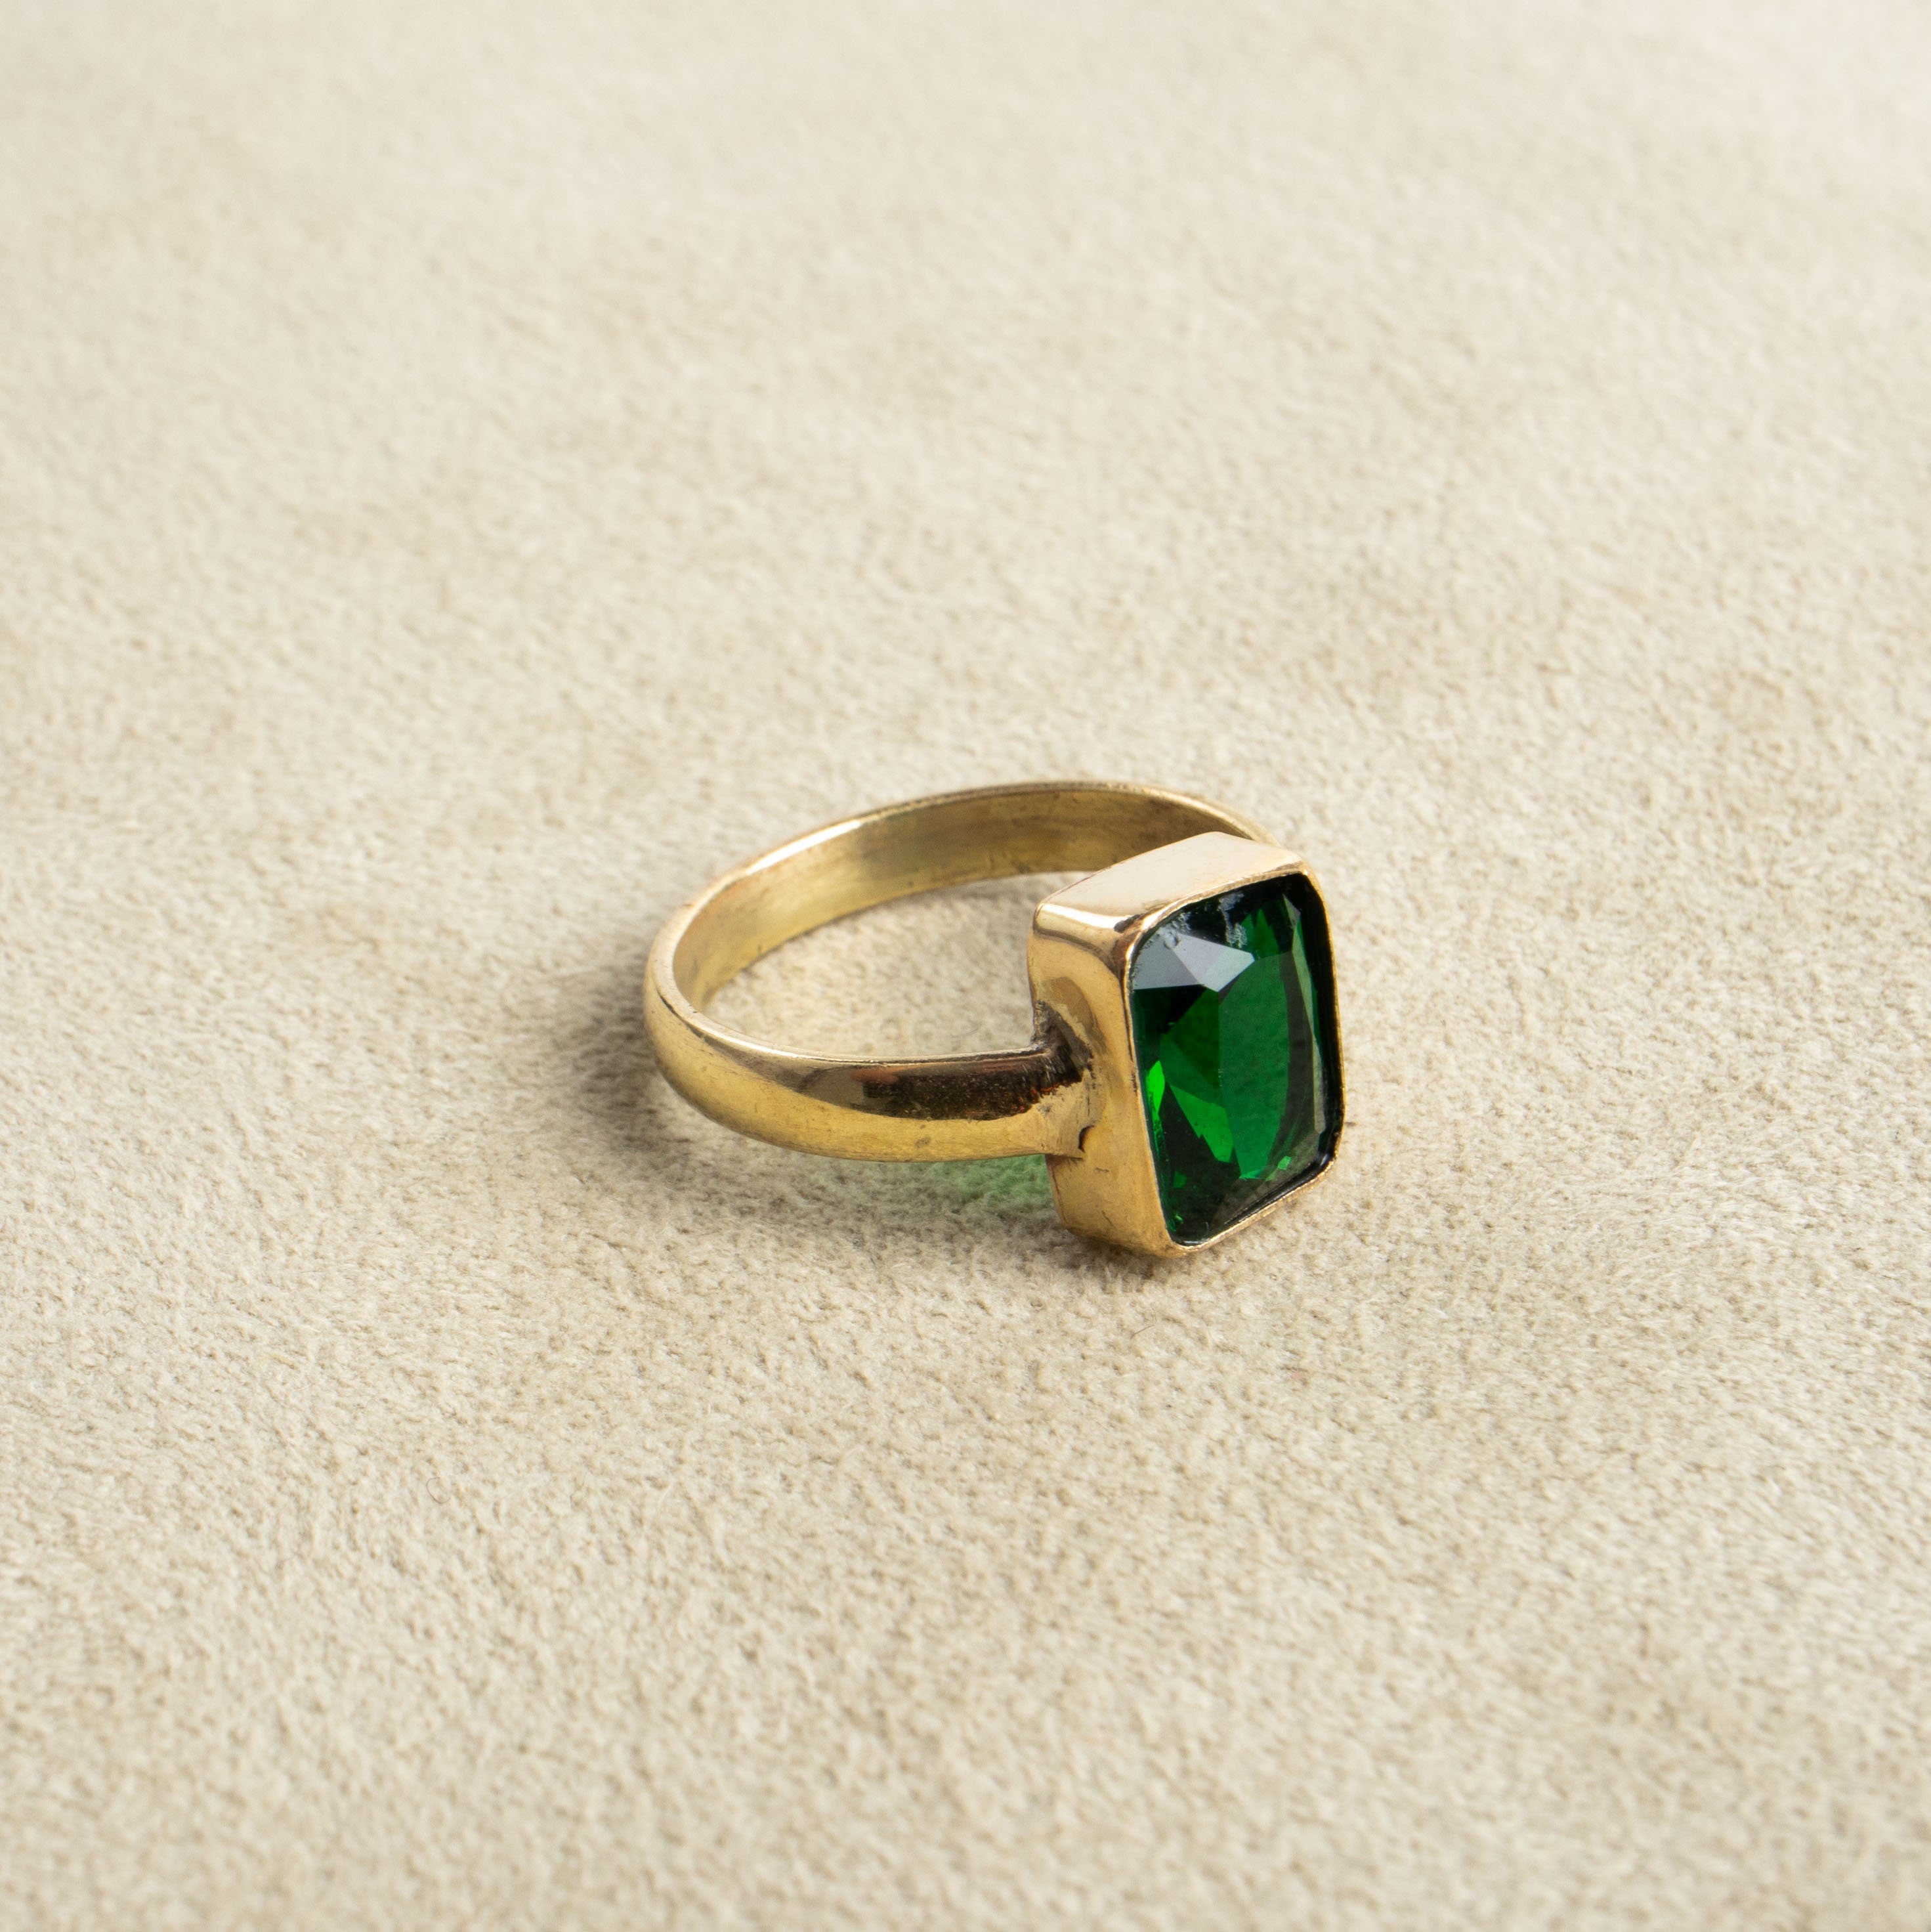 Grüner Zirkon Ring gold eckig geschliffen handgemacht